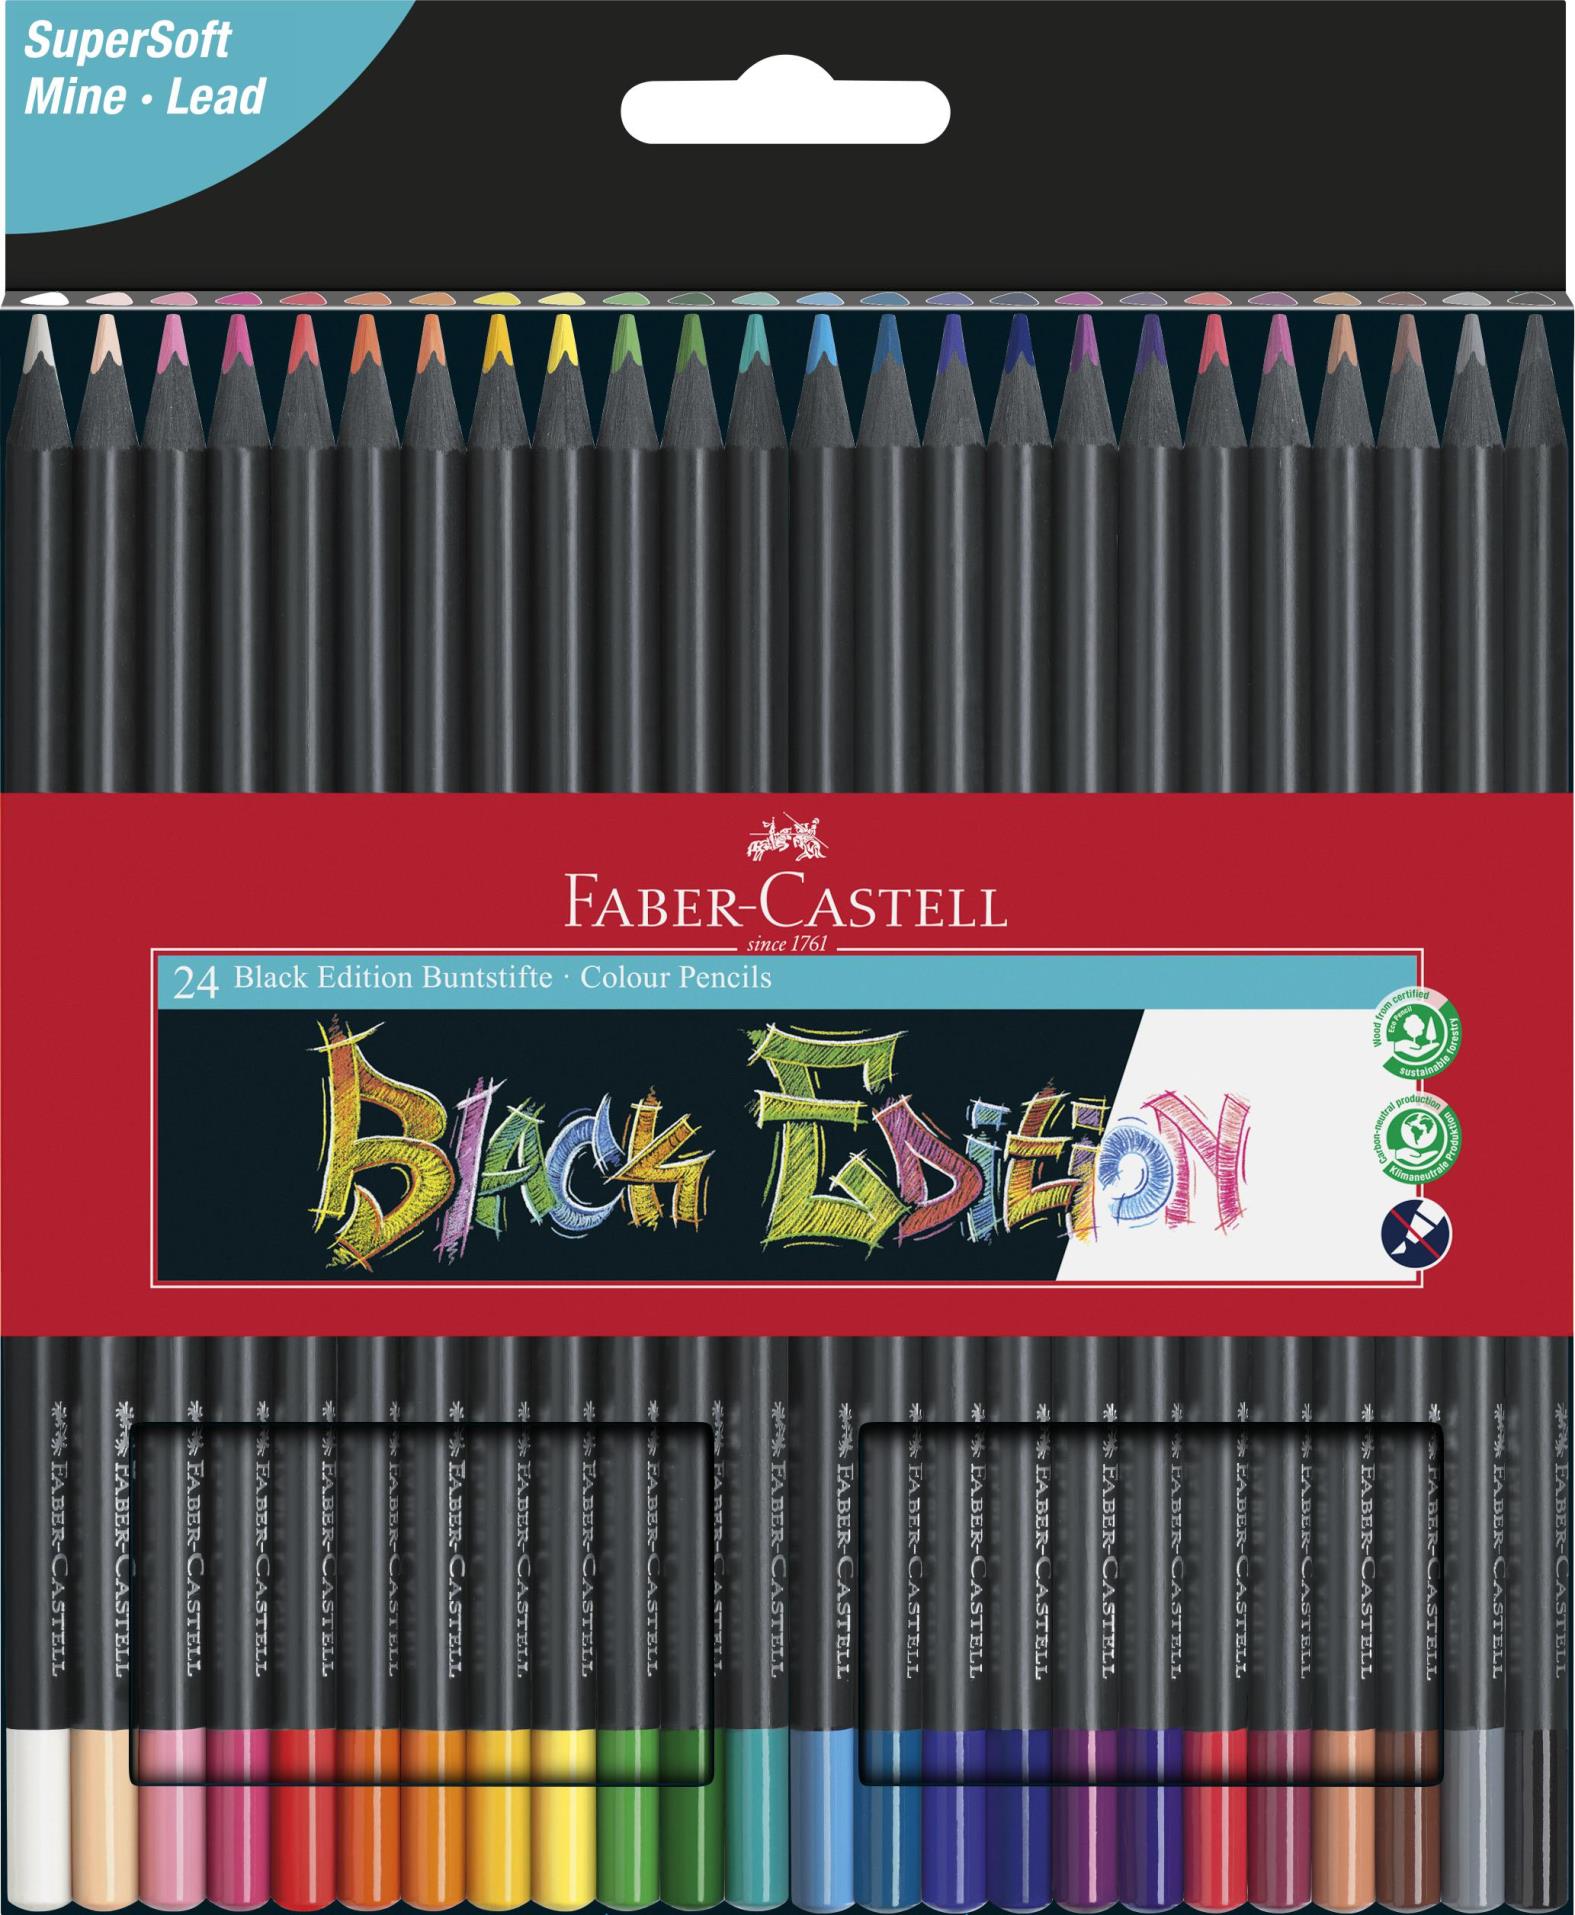 Pastelky Faber-Castell, Black Edition, sada 24 barev v papírové krabičce